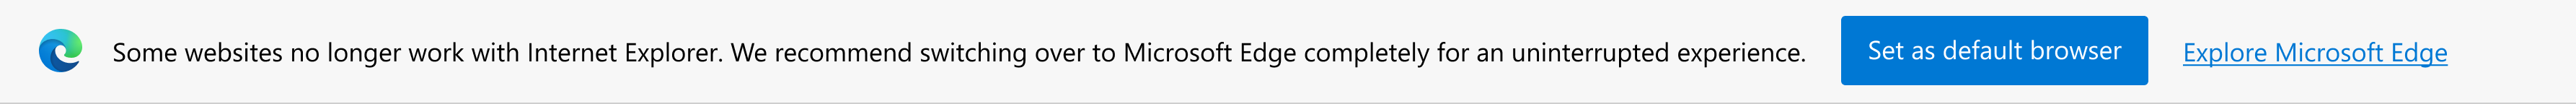 최신 사이트에 대한 알림과 Microsoft Edge를 기본 브라우저로 설정하거나 Microsoft Edge를 탐색하라는 메시지입니다.